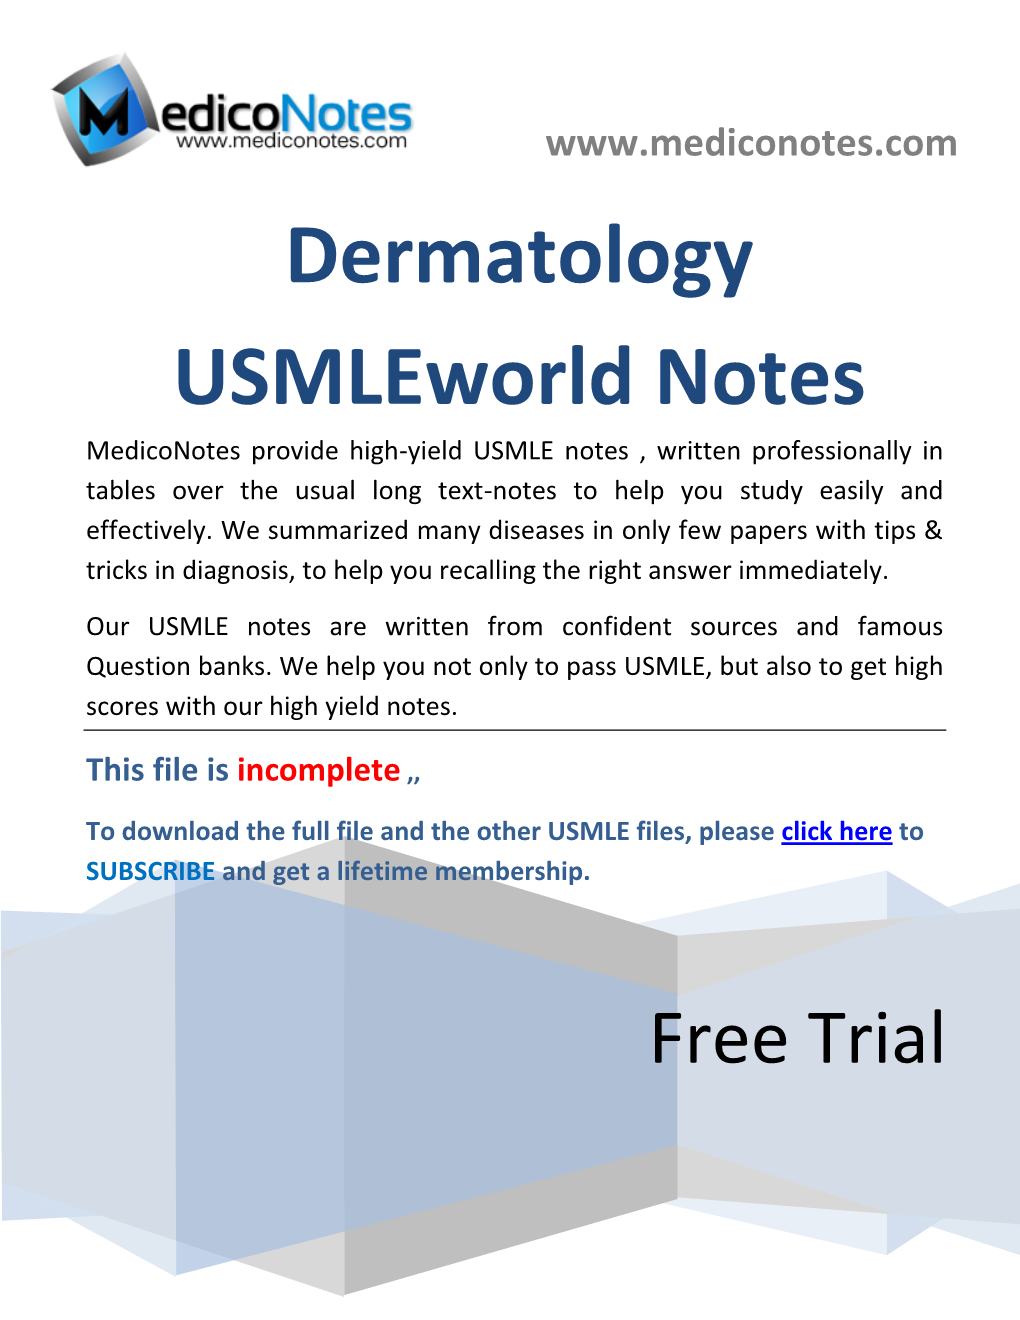 Dermatology Usmleworld Notes